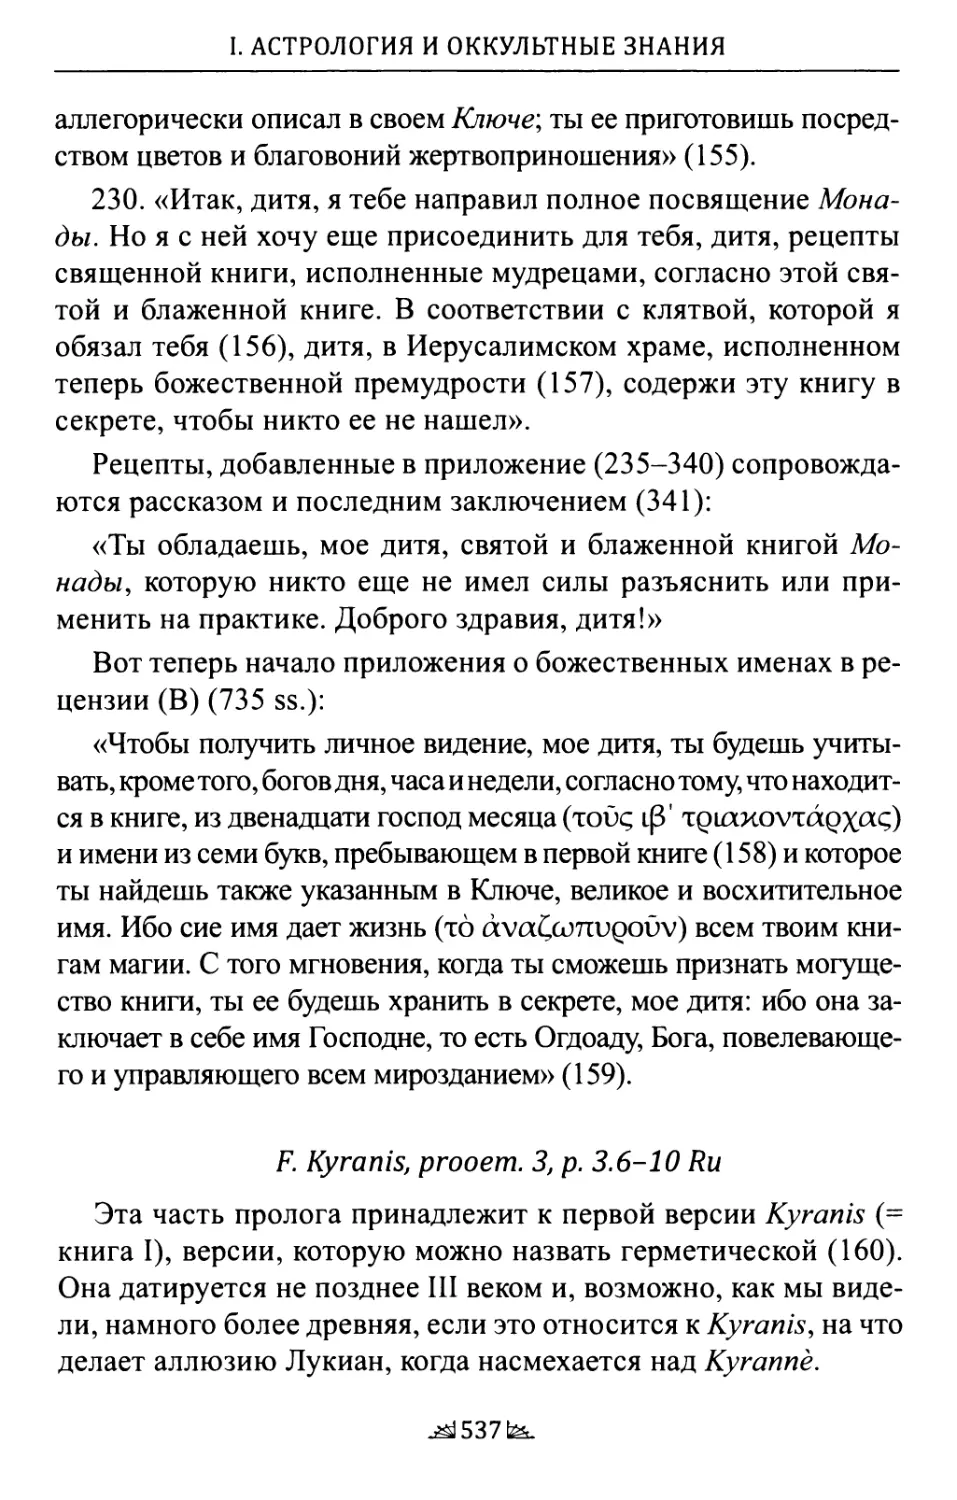 F. Kyranis, prooem. 3, p. 3.6-10 Ru